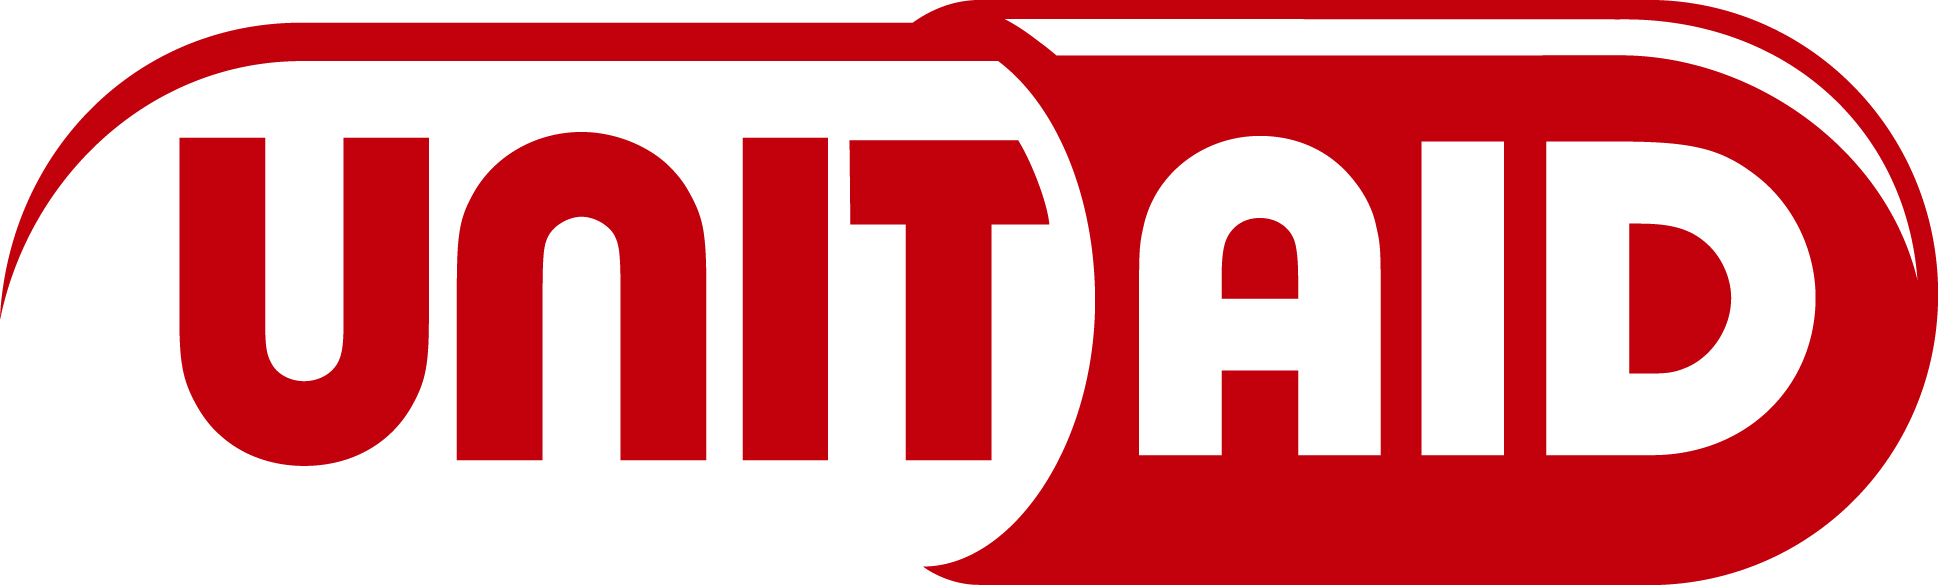 UNITAID HR logo